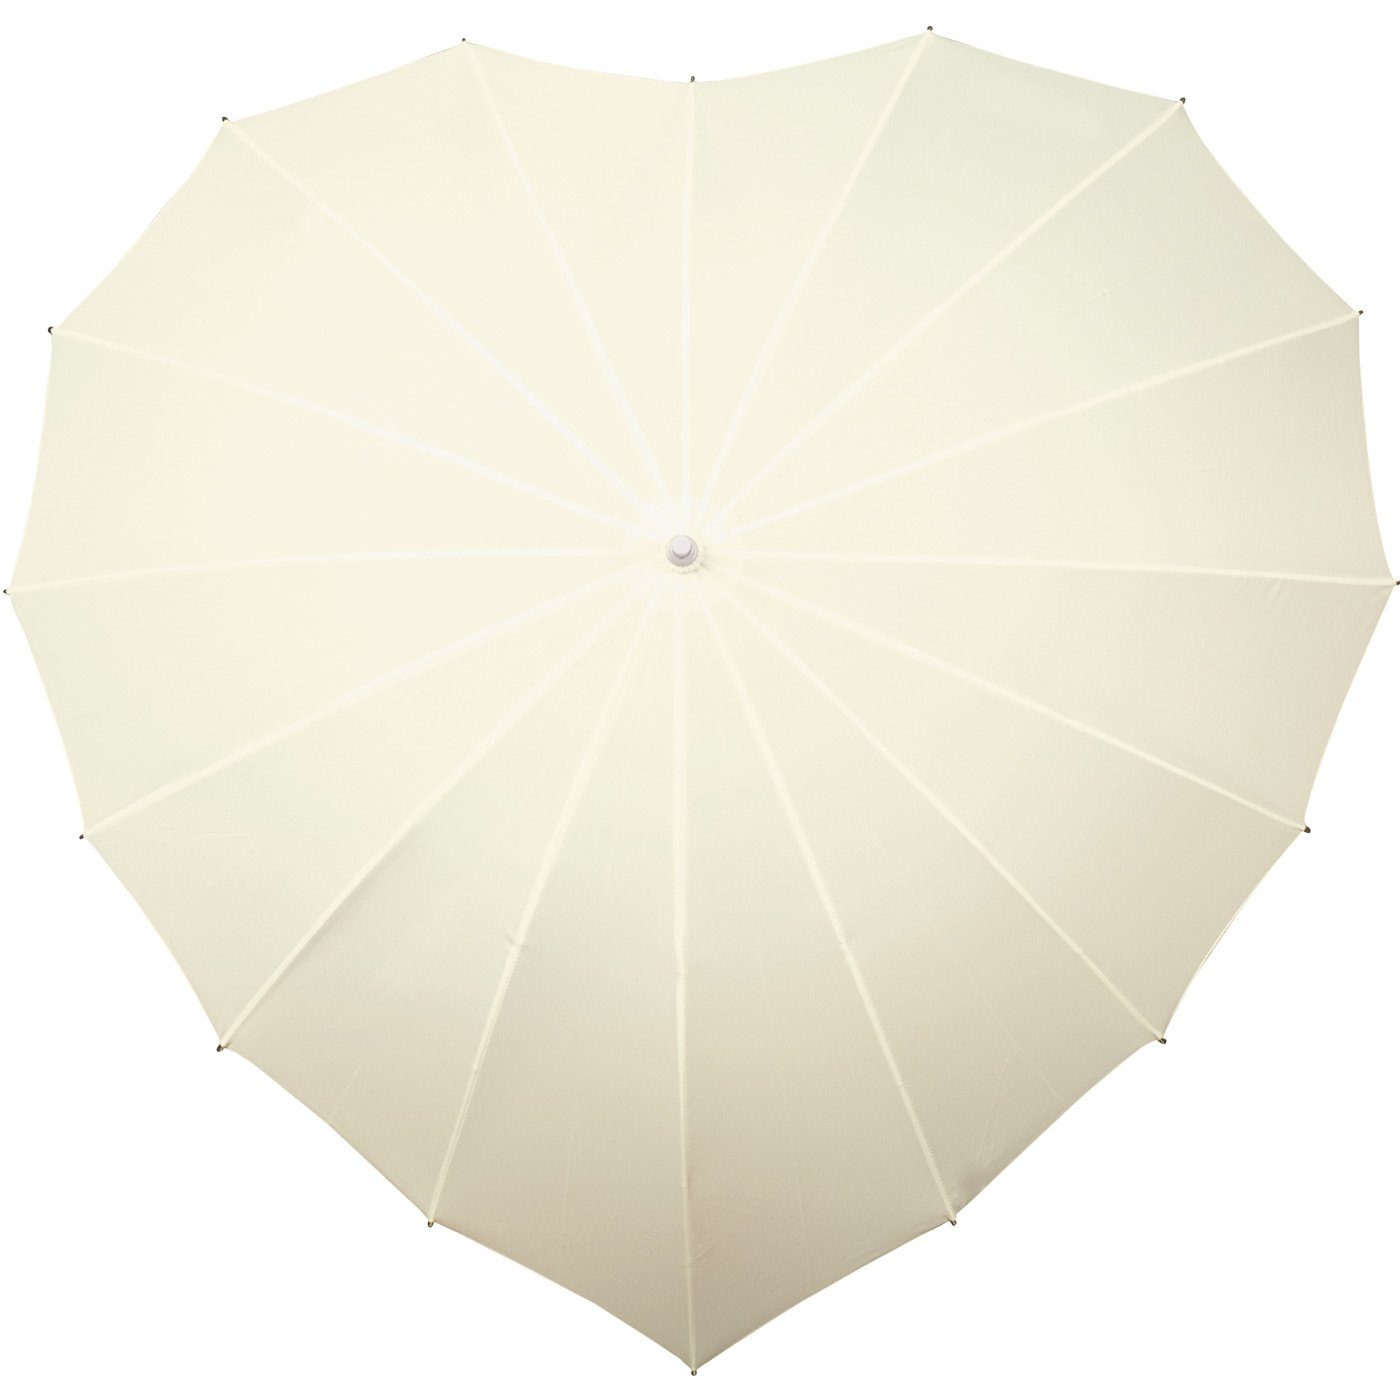 Impliva Langregenschirm Regenschirm in Hochzeitsschirm, herzförmiger 16-teilig Herzform creme Regenschirm